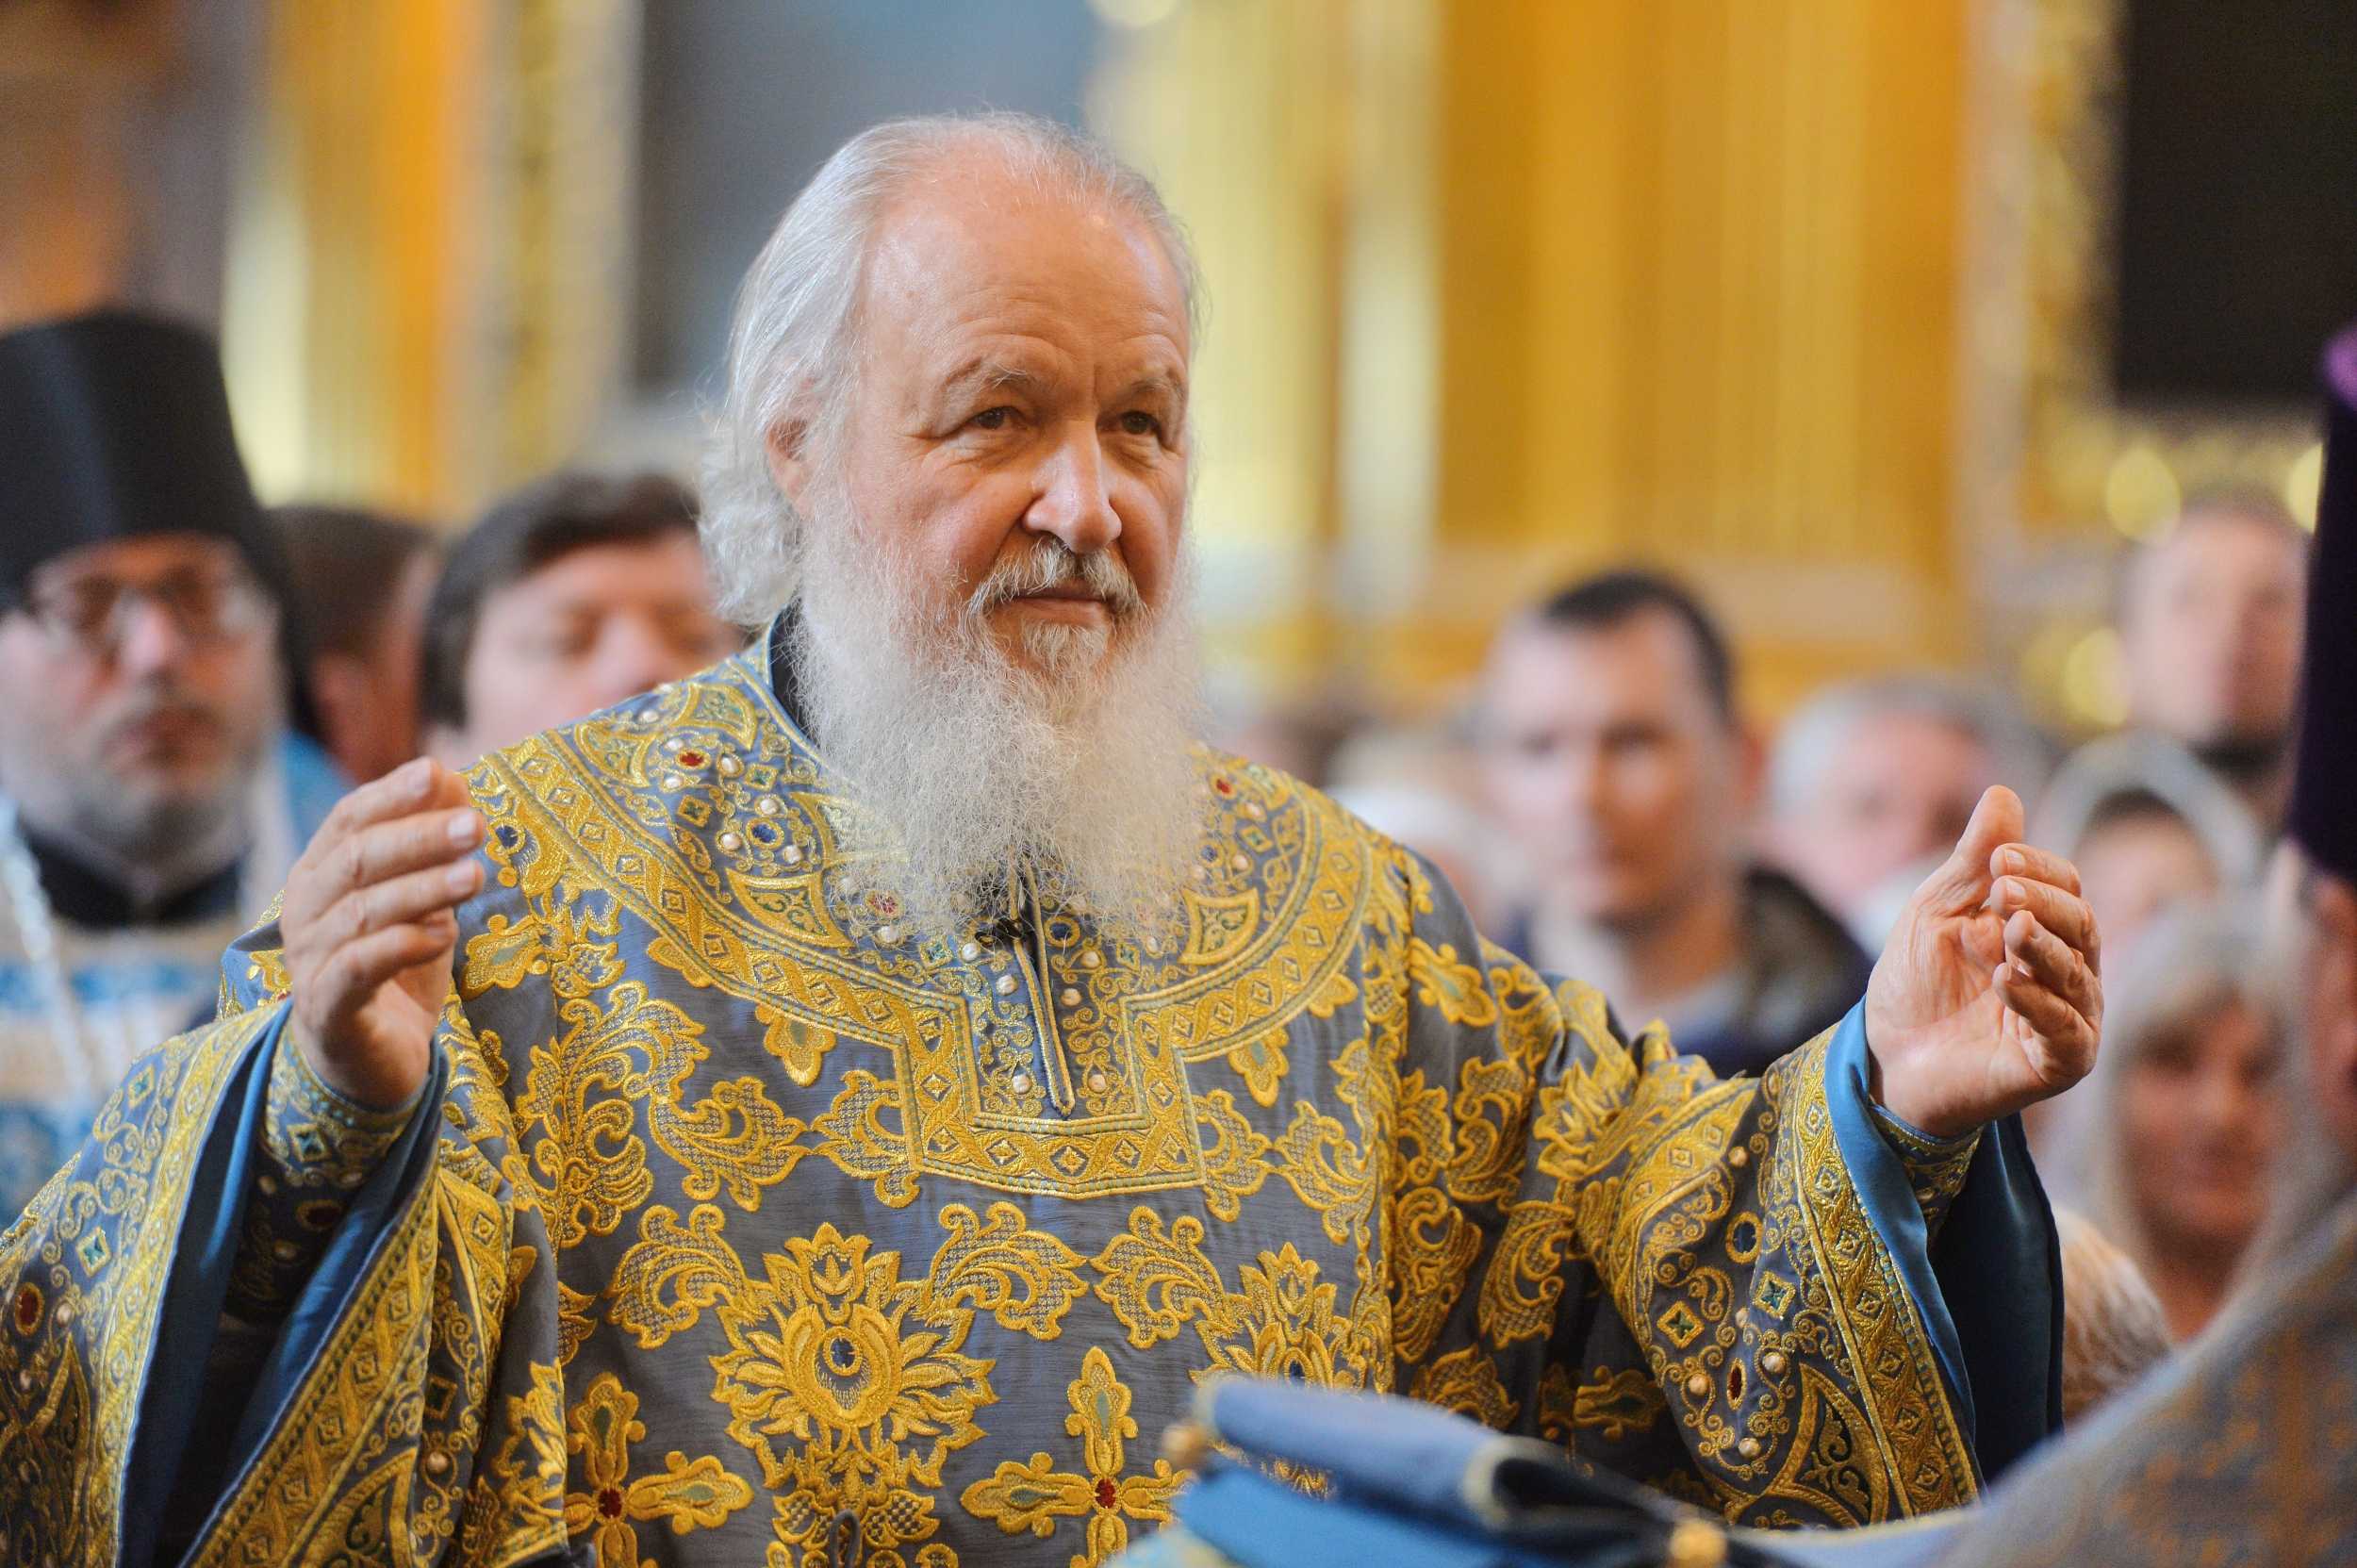 Митрополит Иларион рассказал о юбилейном издании книги «Патриарх Кирилл. Биография» 